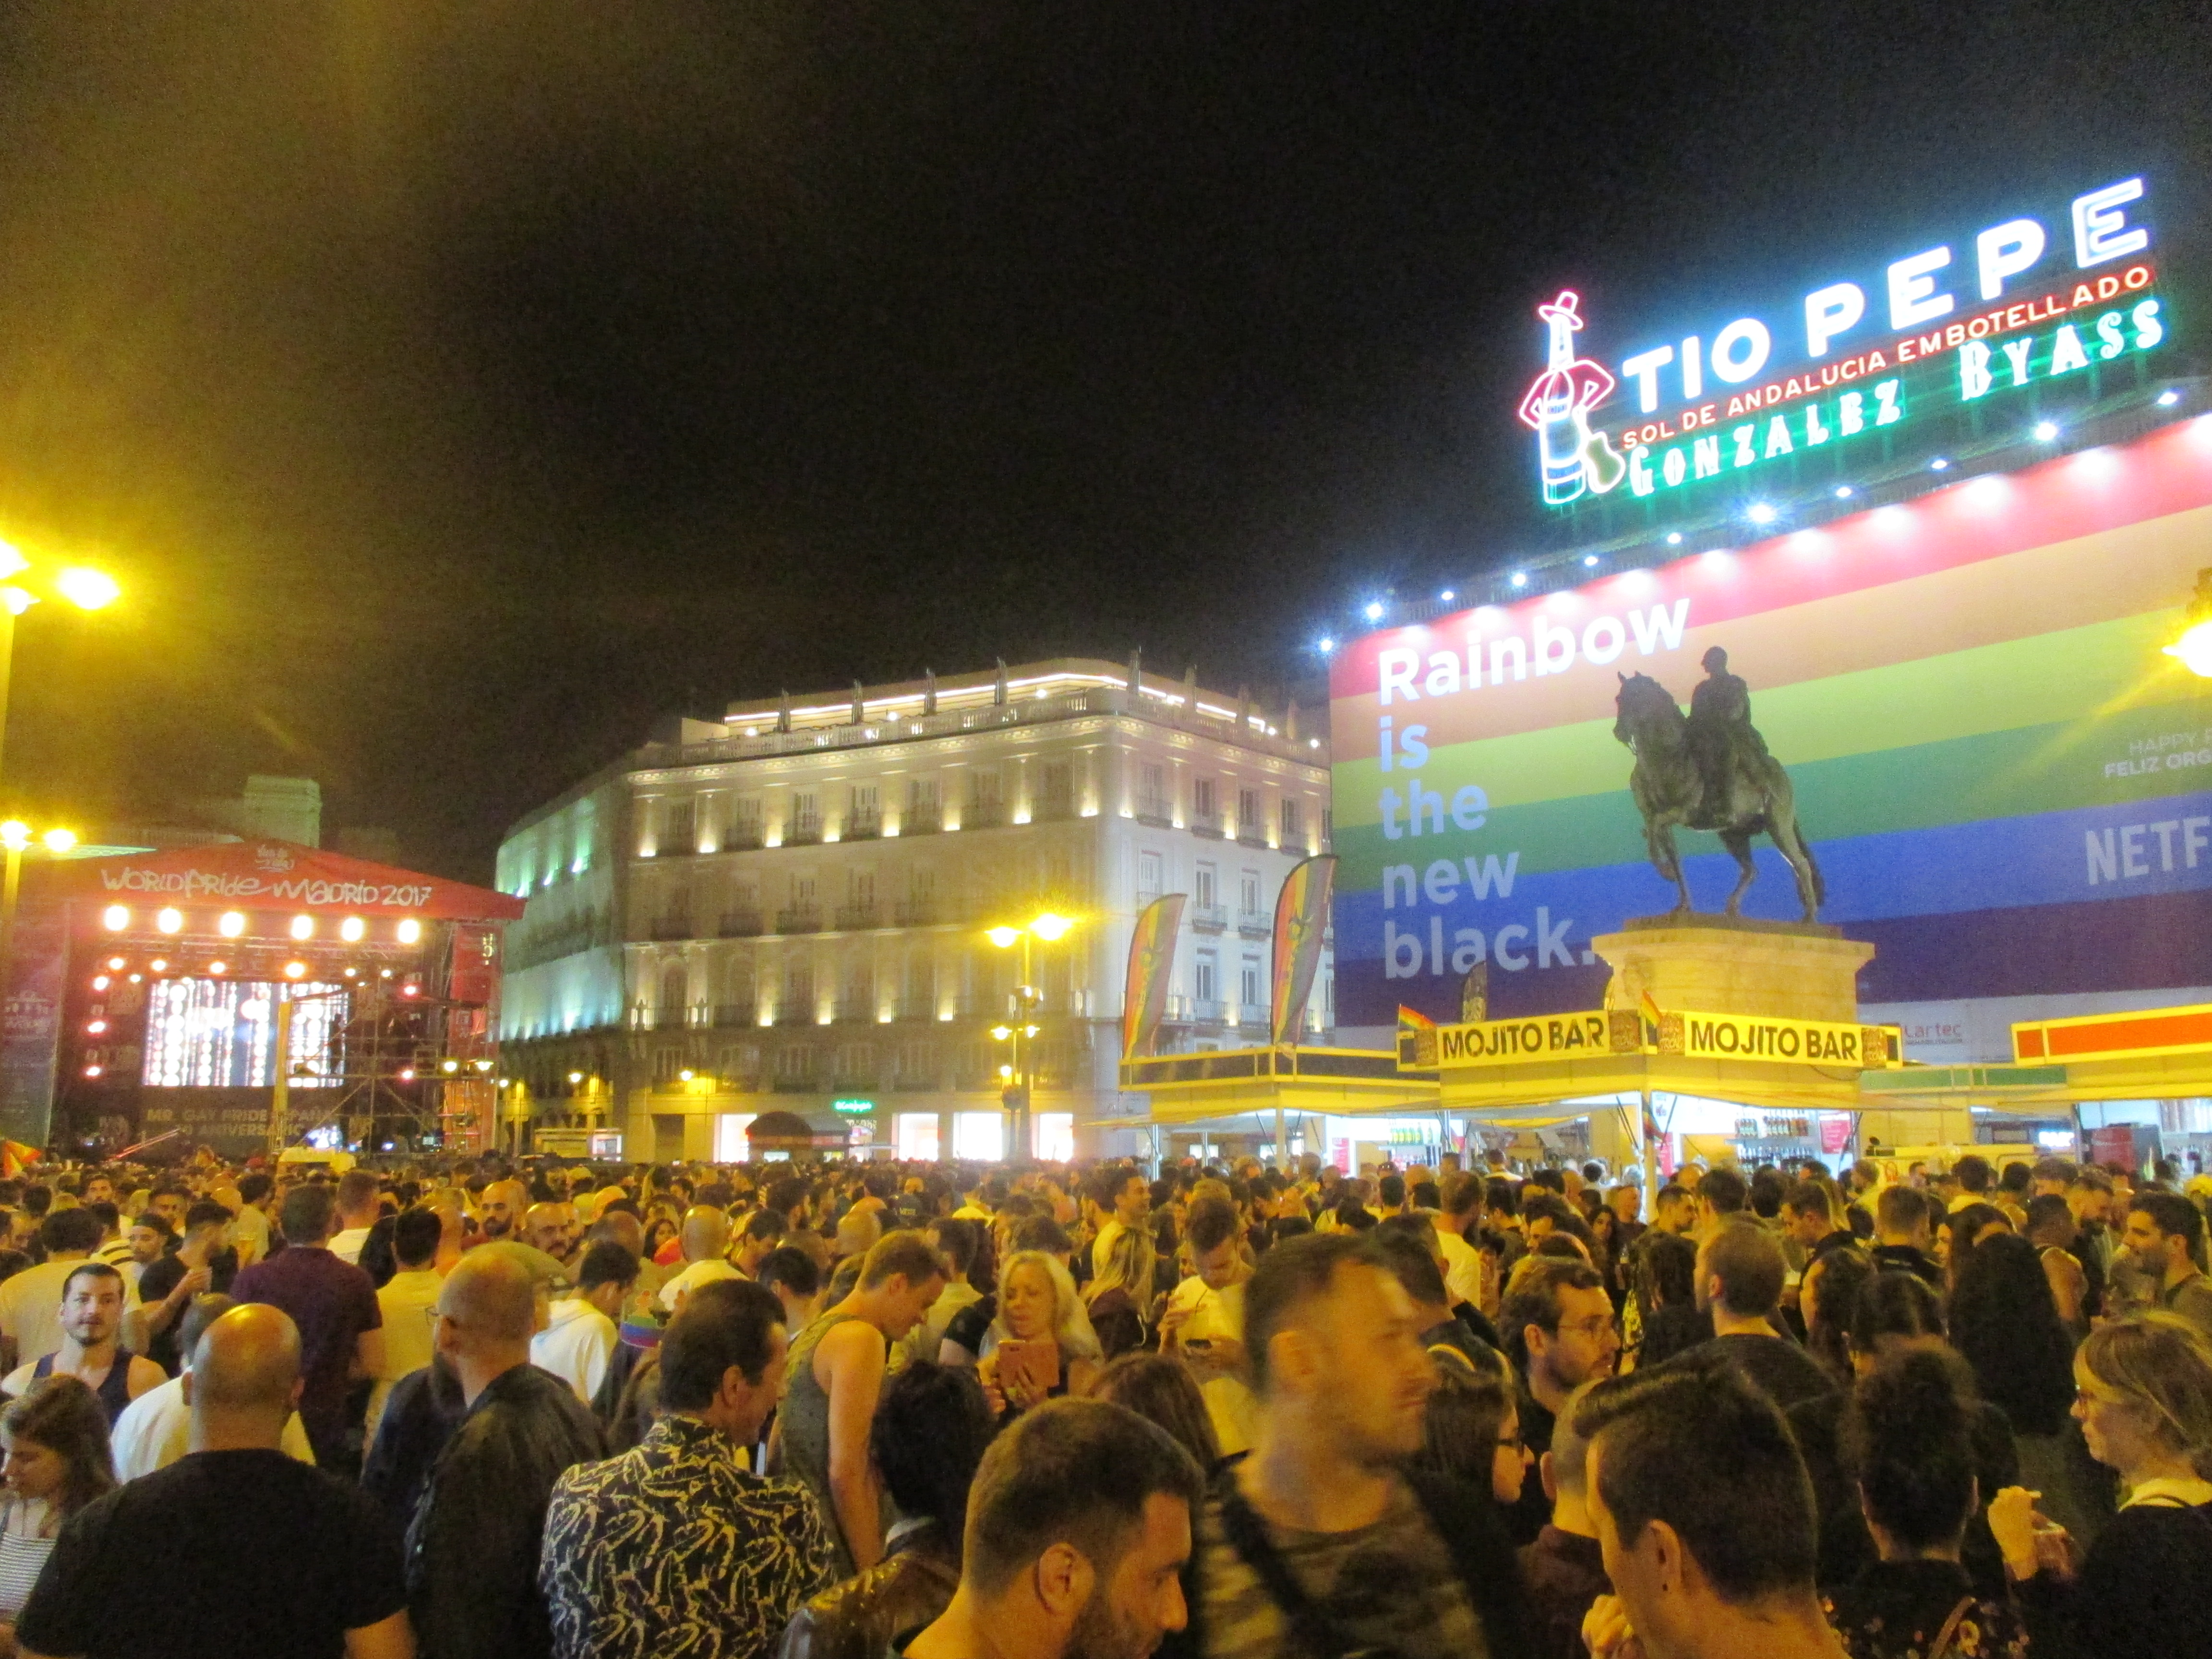 Puerta de Sol during the Mr. Gay Pride contest last Friday, June 30